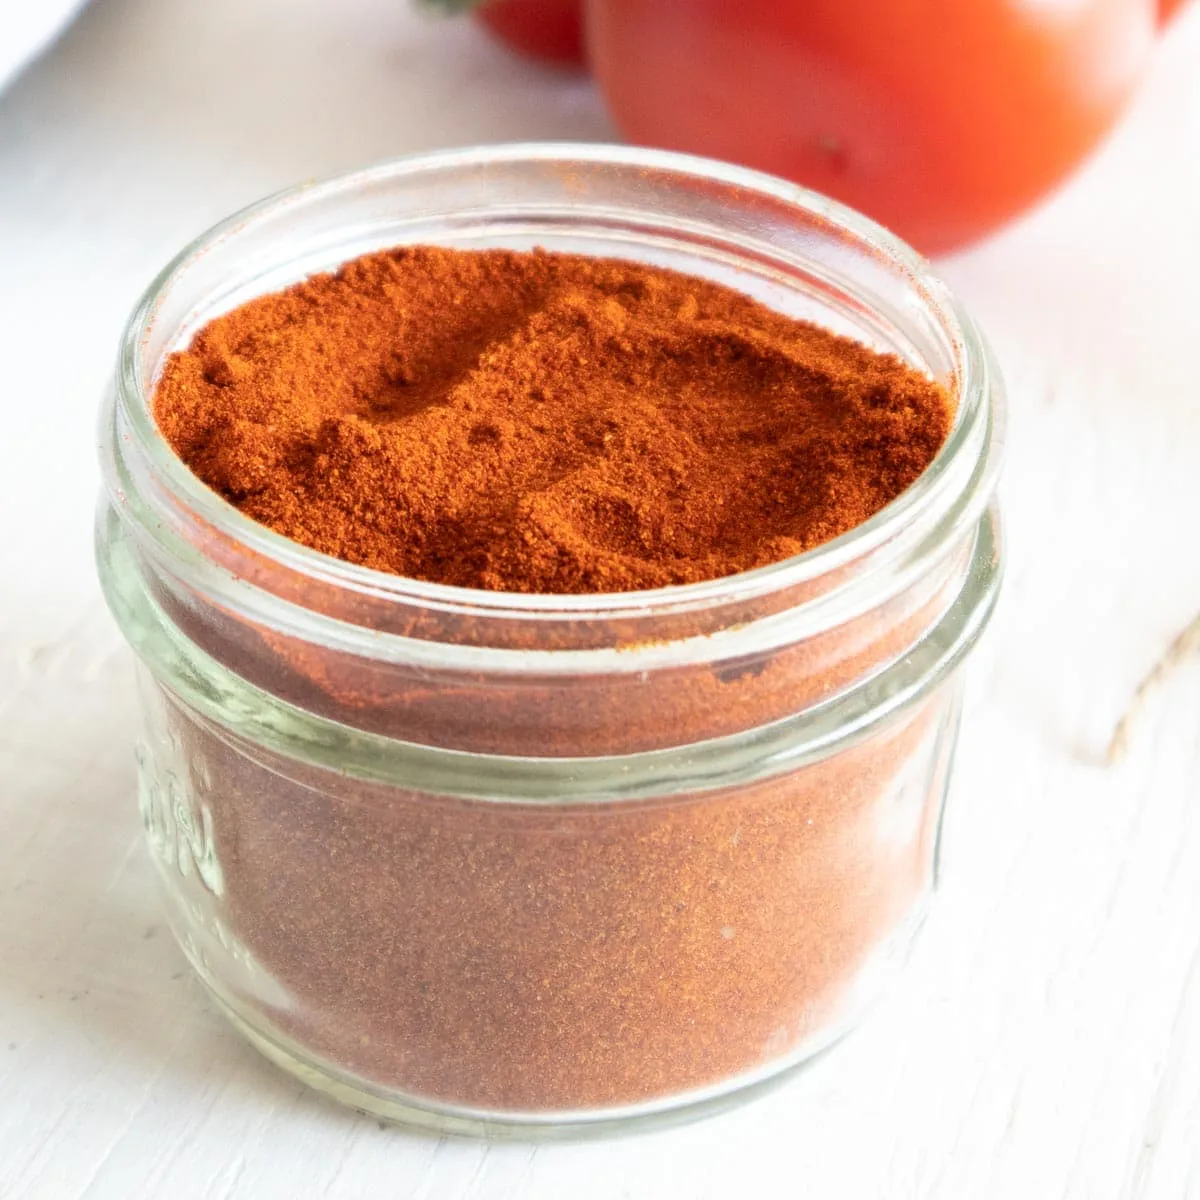 Dried tomato powder in a glass jar.